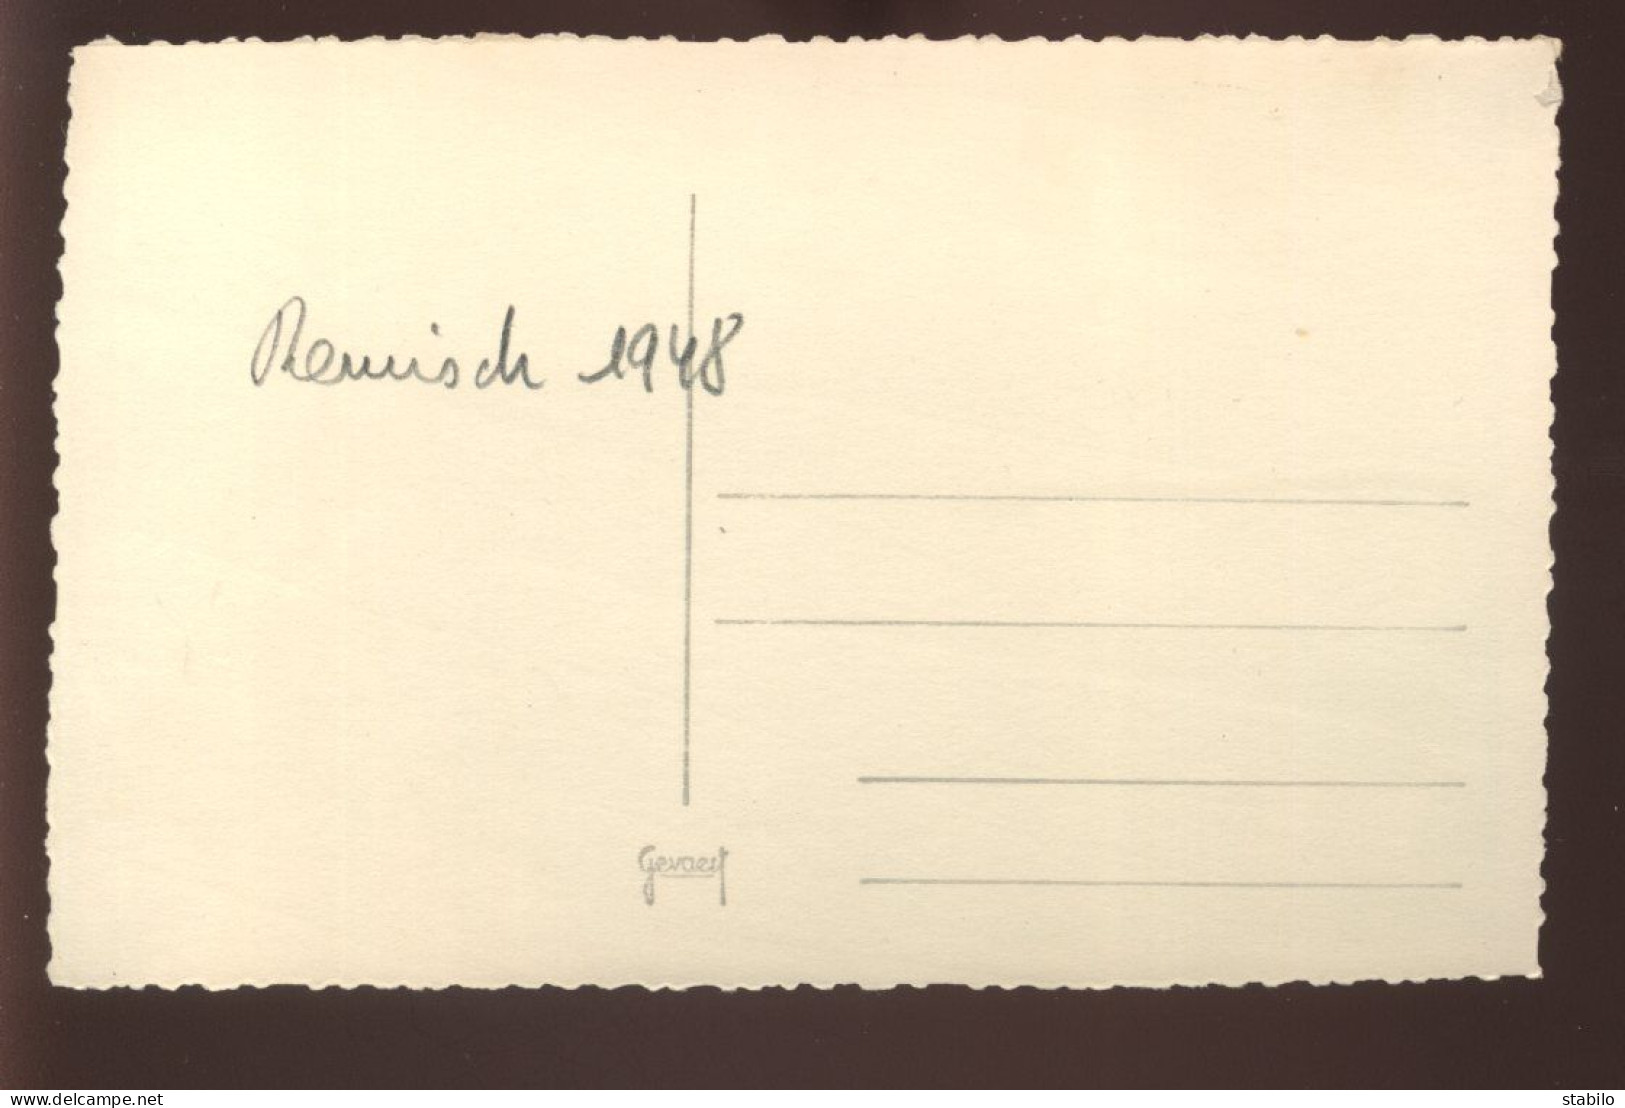 LUXEMBOURG - REMISCH - VENTE DE RAISINS - 1948 - FORMAT 13 X 8.5 CM - Lieux